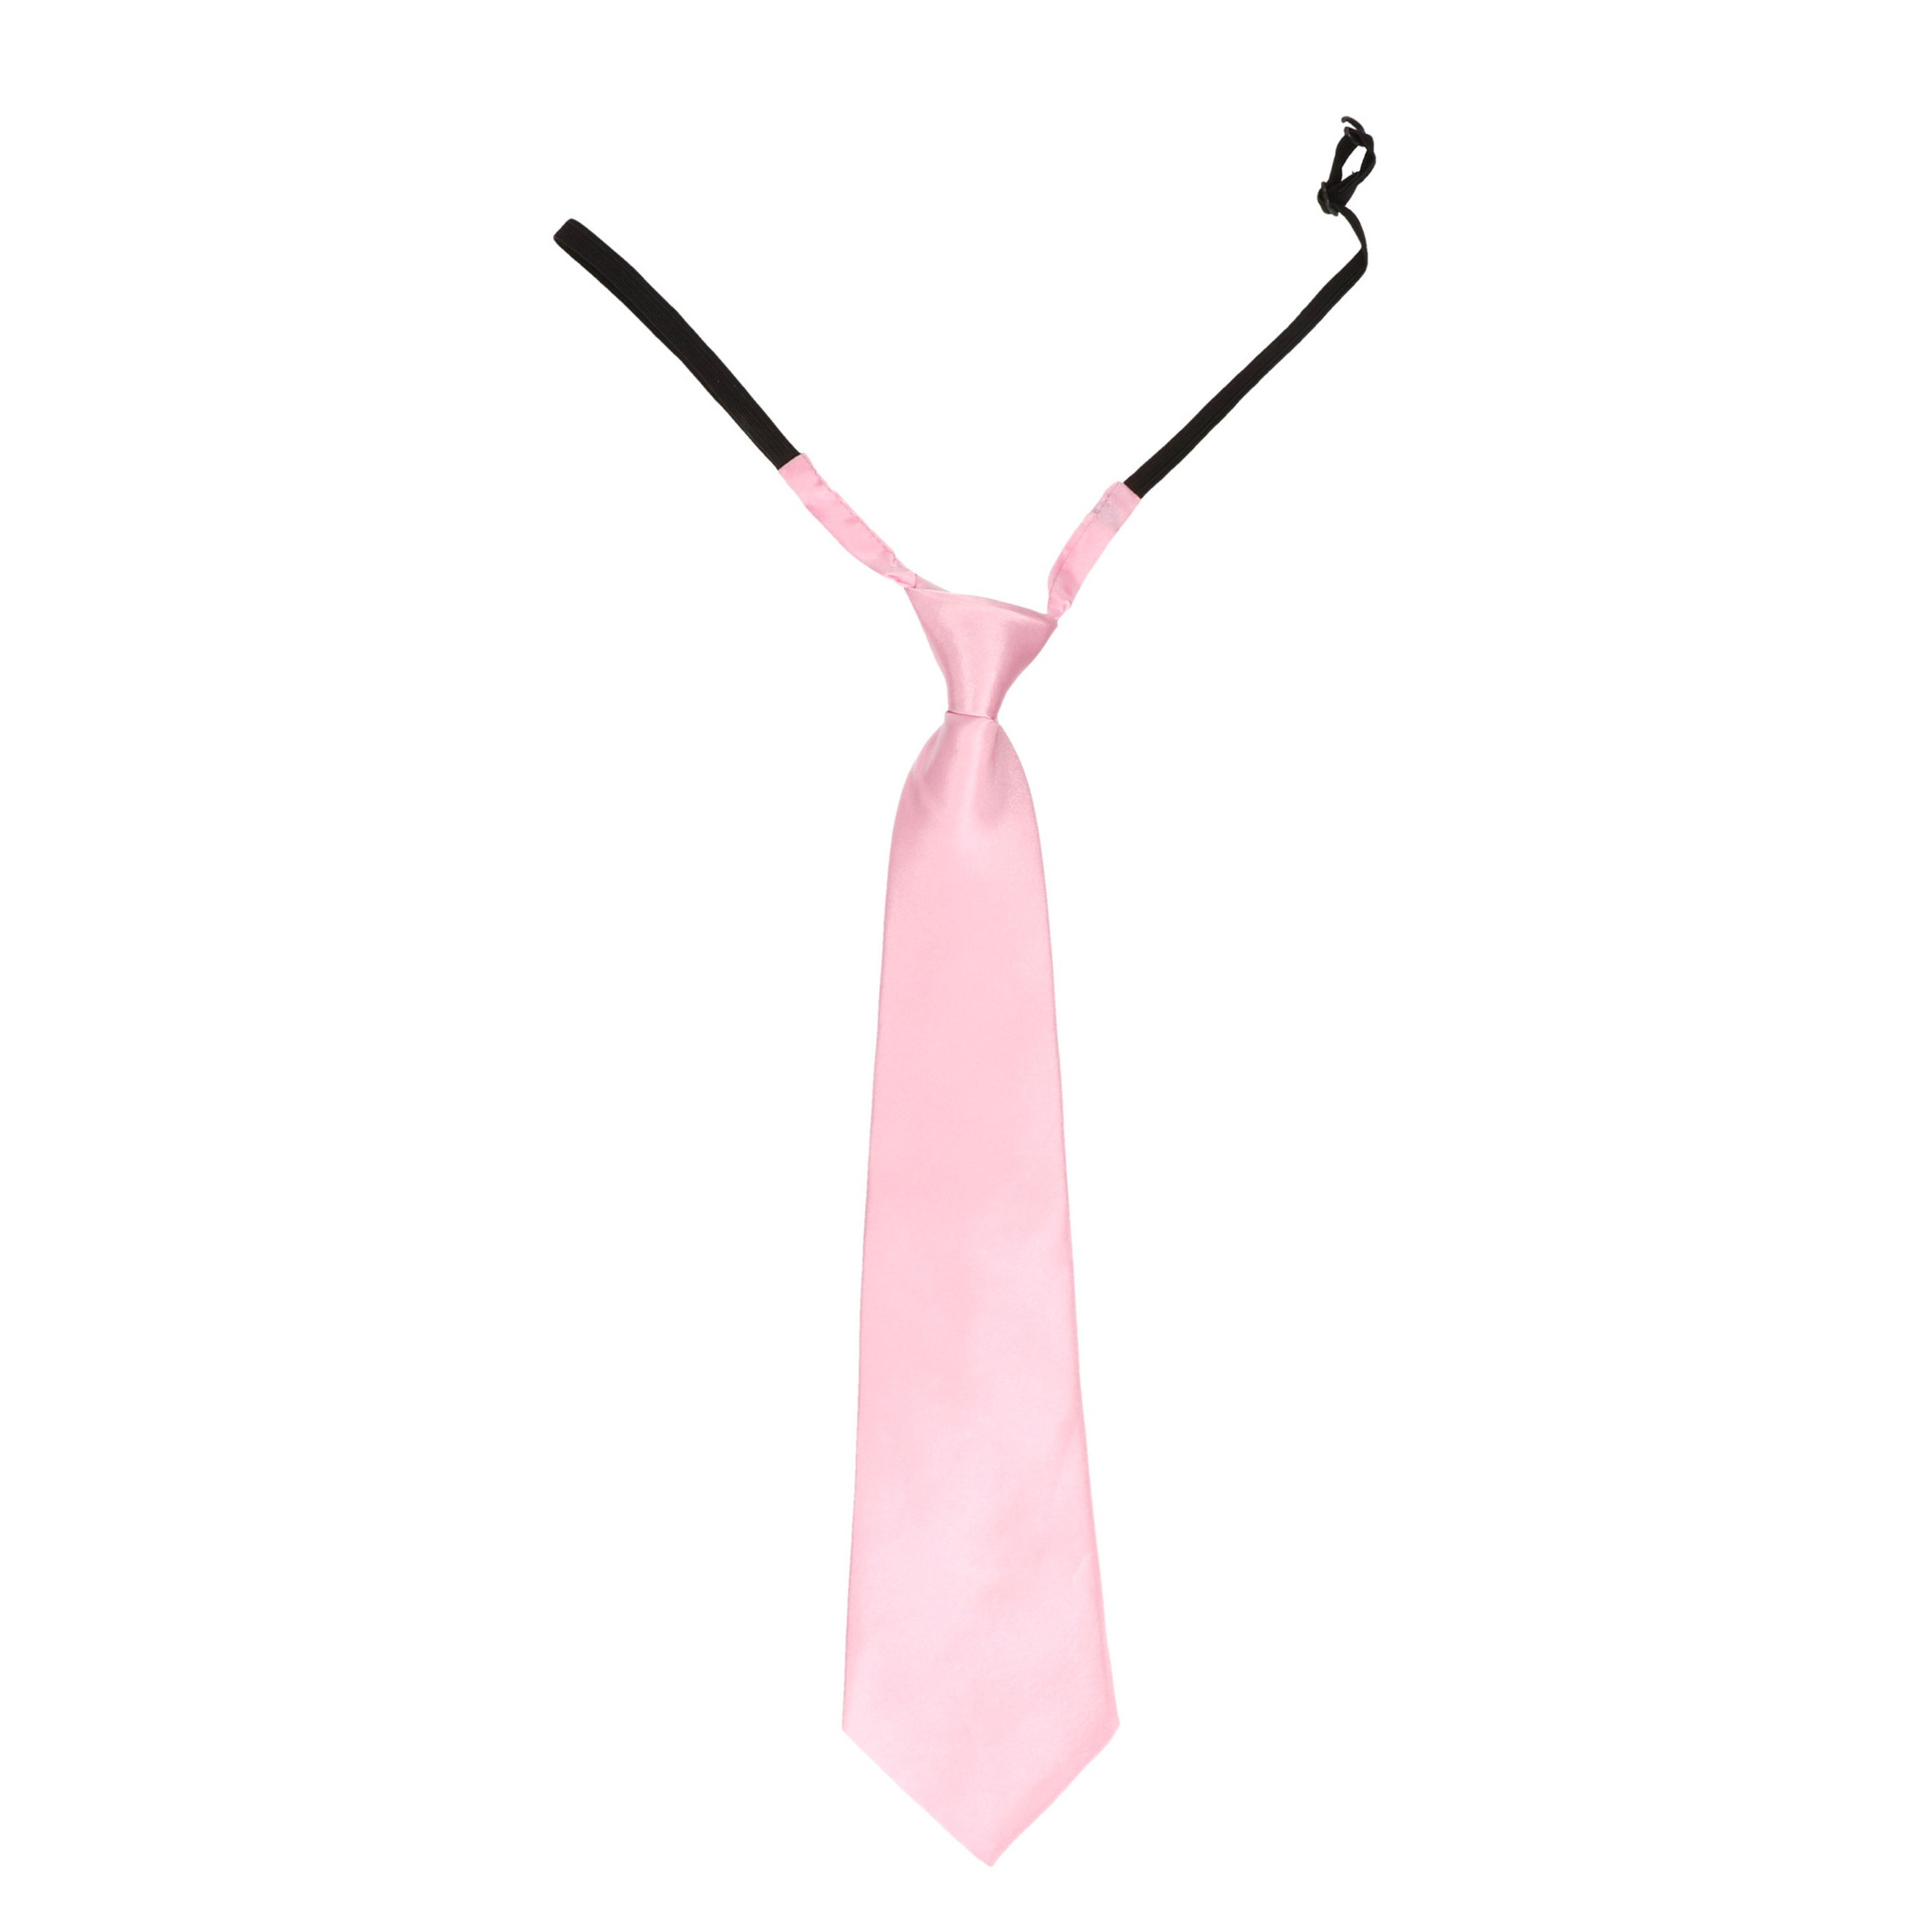 Lichtroze stropdas 40 cm verkleedaccessoire voor dames/heren